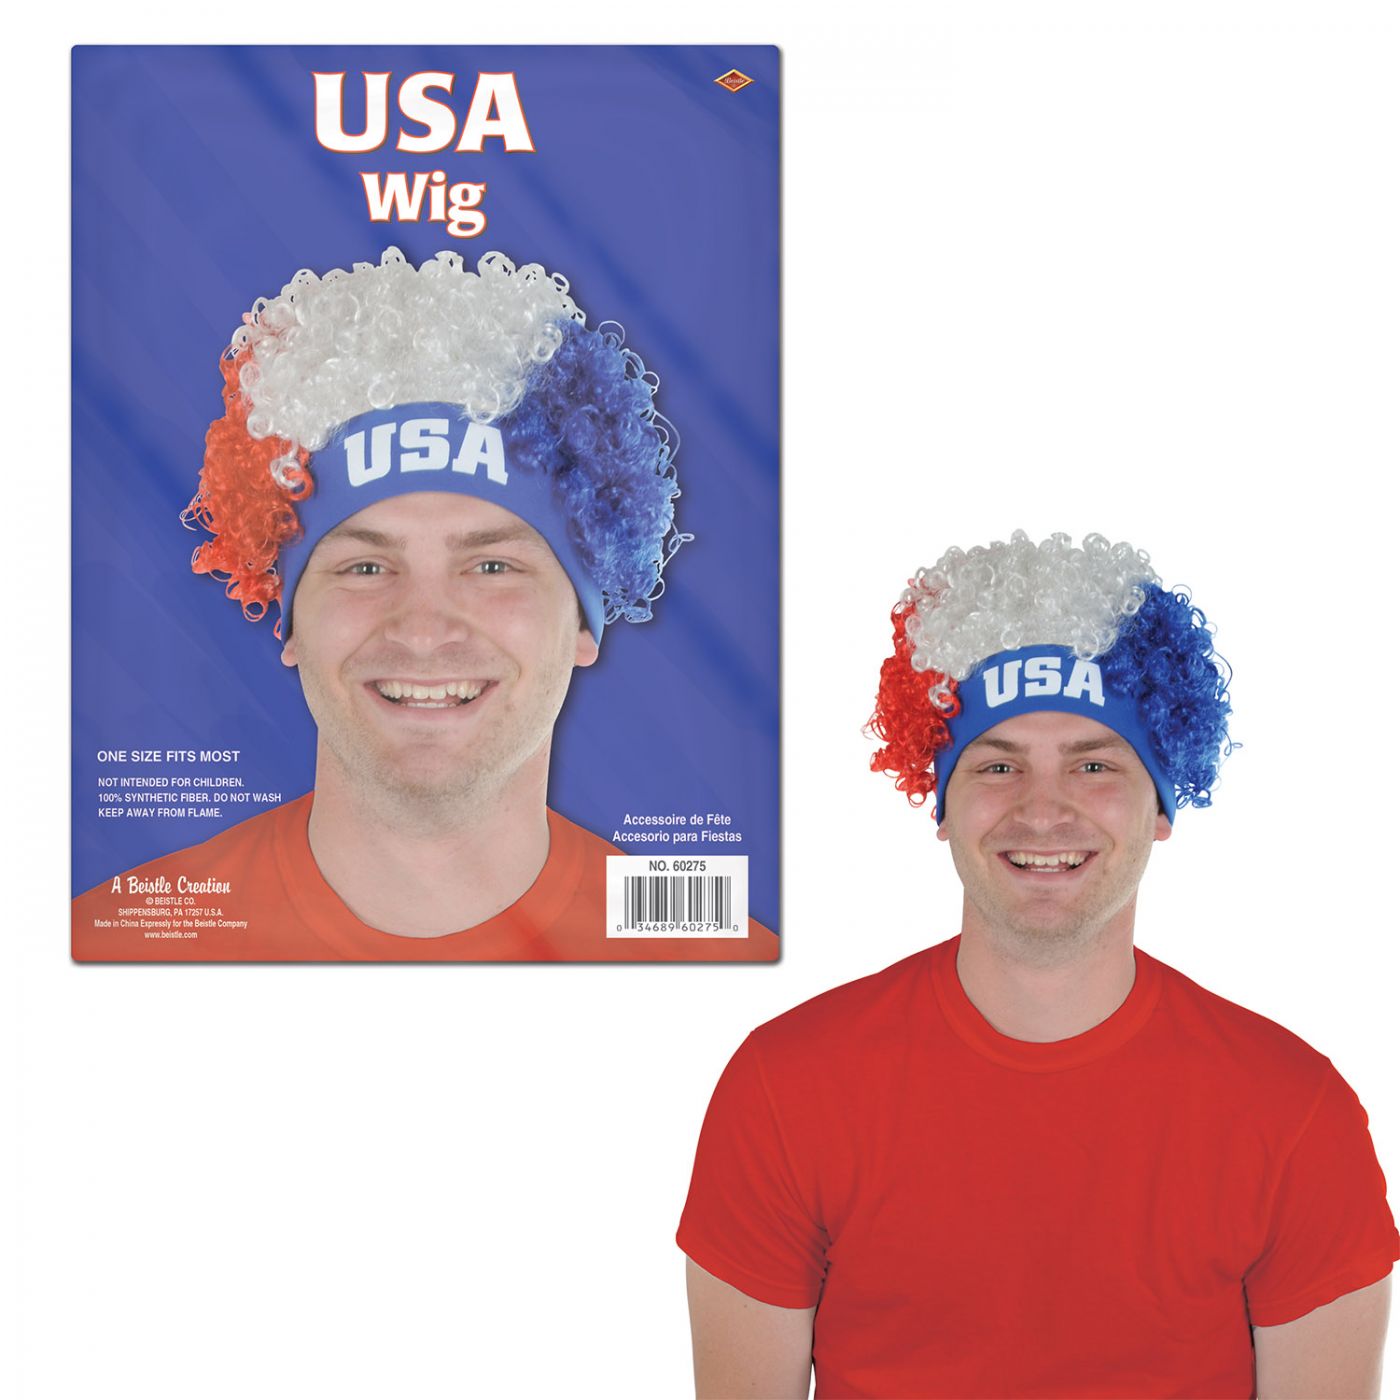 USA Wig (12) image